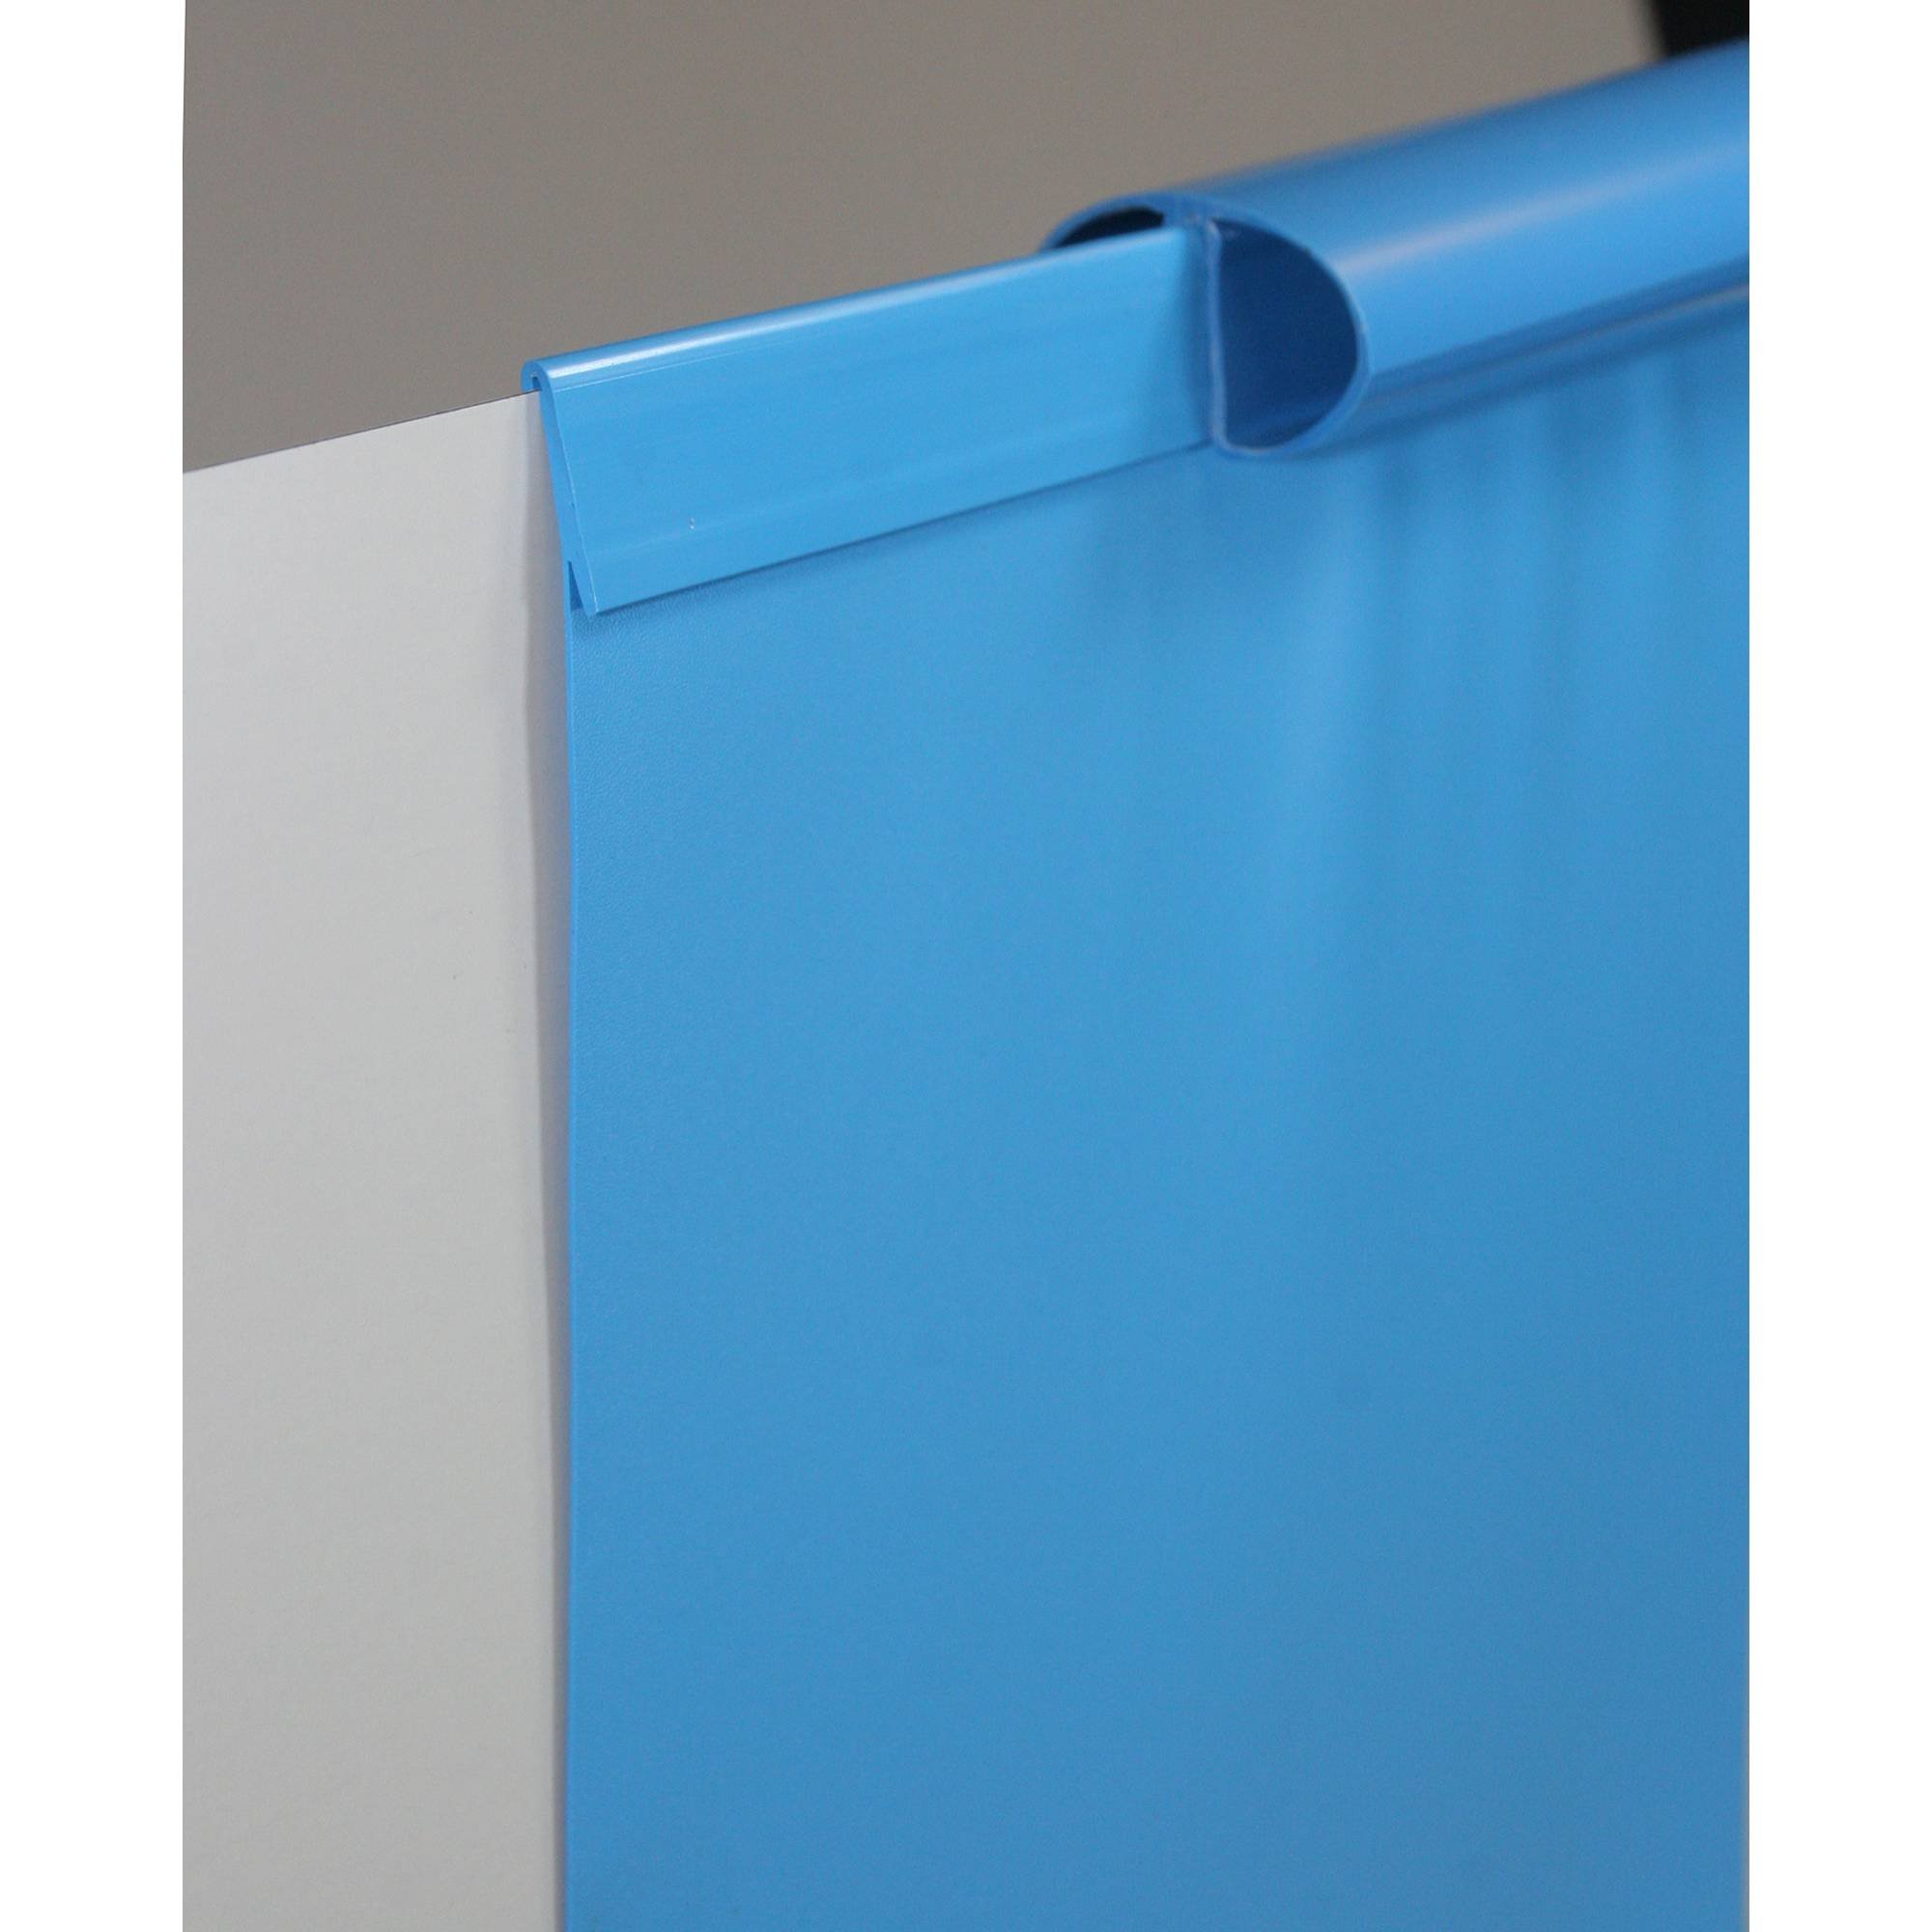 Stahlwandpool rund 300x120cm, Stahl 0,4mm weiß, Folie 0,4mm blau, Einhängebiese